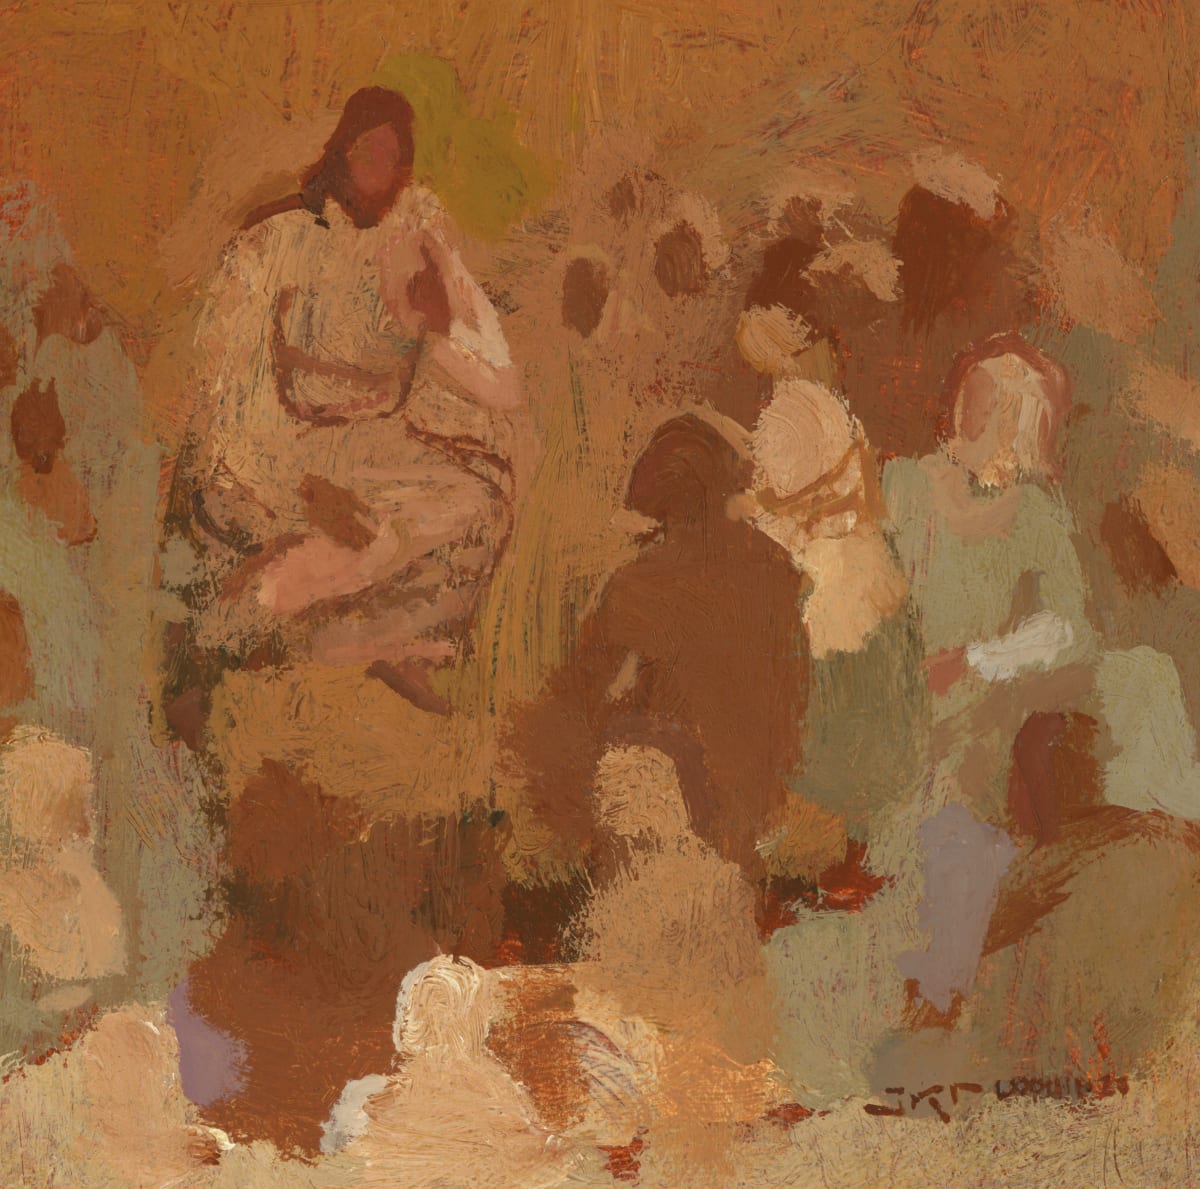 Teacher by J. Kirk Richards  Image: Christ teaches a multitude on a hill